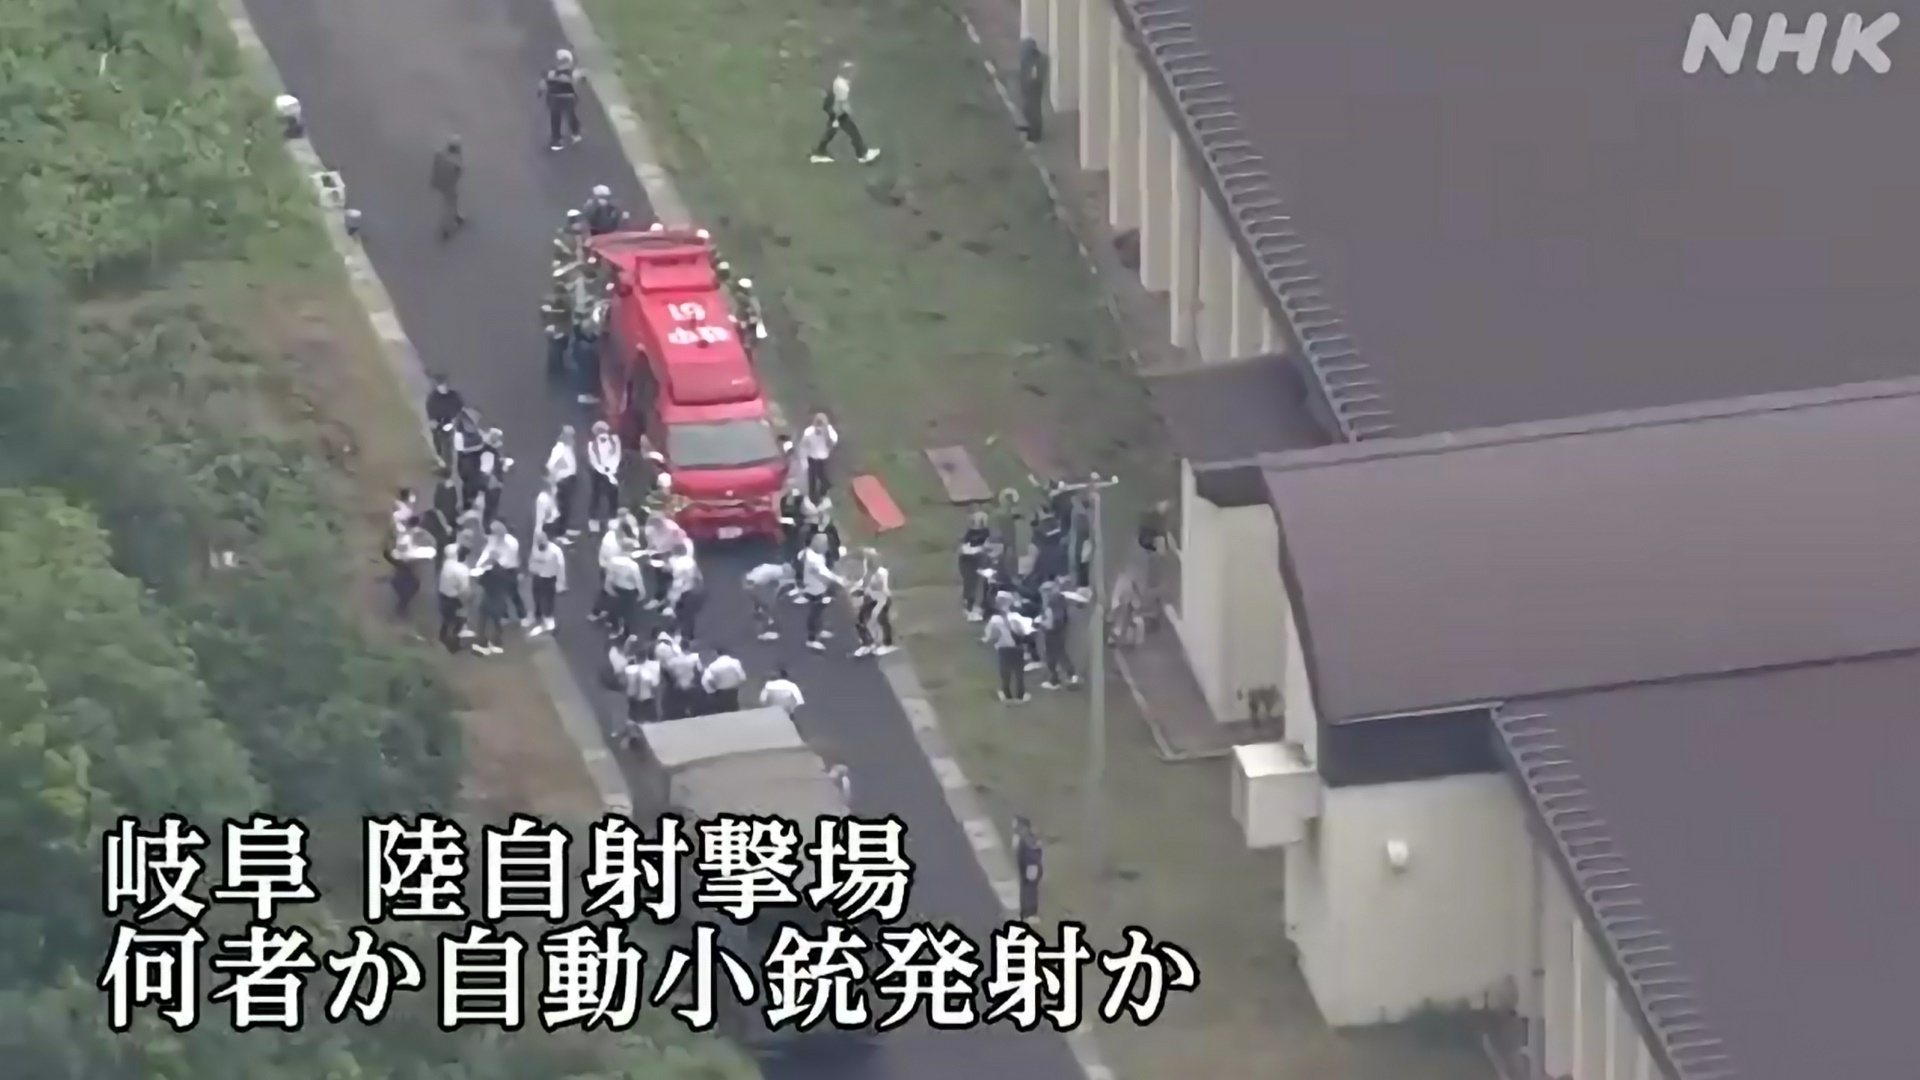 일본의 자위대 사격장에서 총격 사건이 발생해 자위대원 1명이 숨지고 2명이 다쳤다고 14일 NHK 등 현지언론이 보도했다. 2023.6.14 NHK 캡쳐